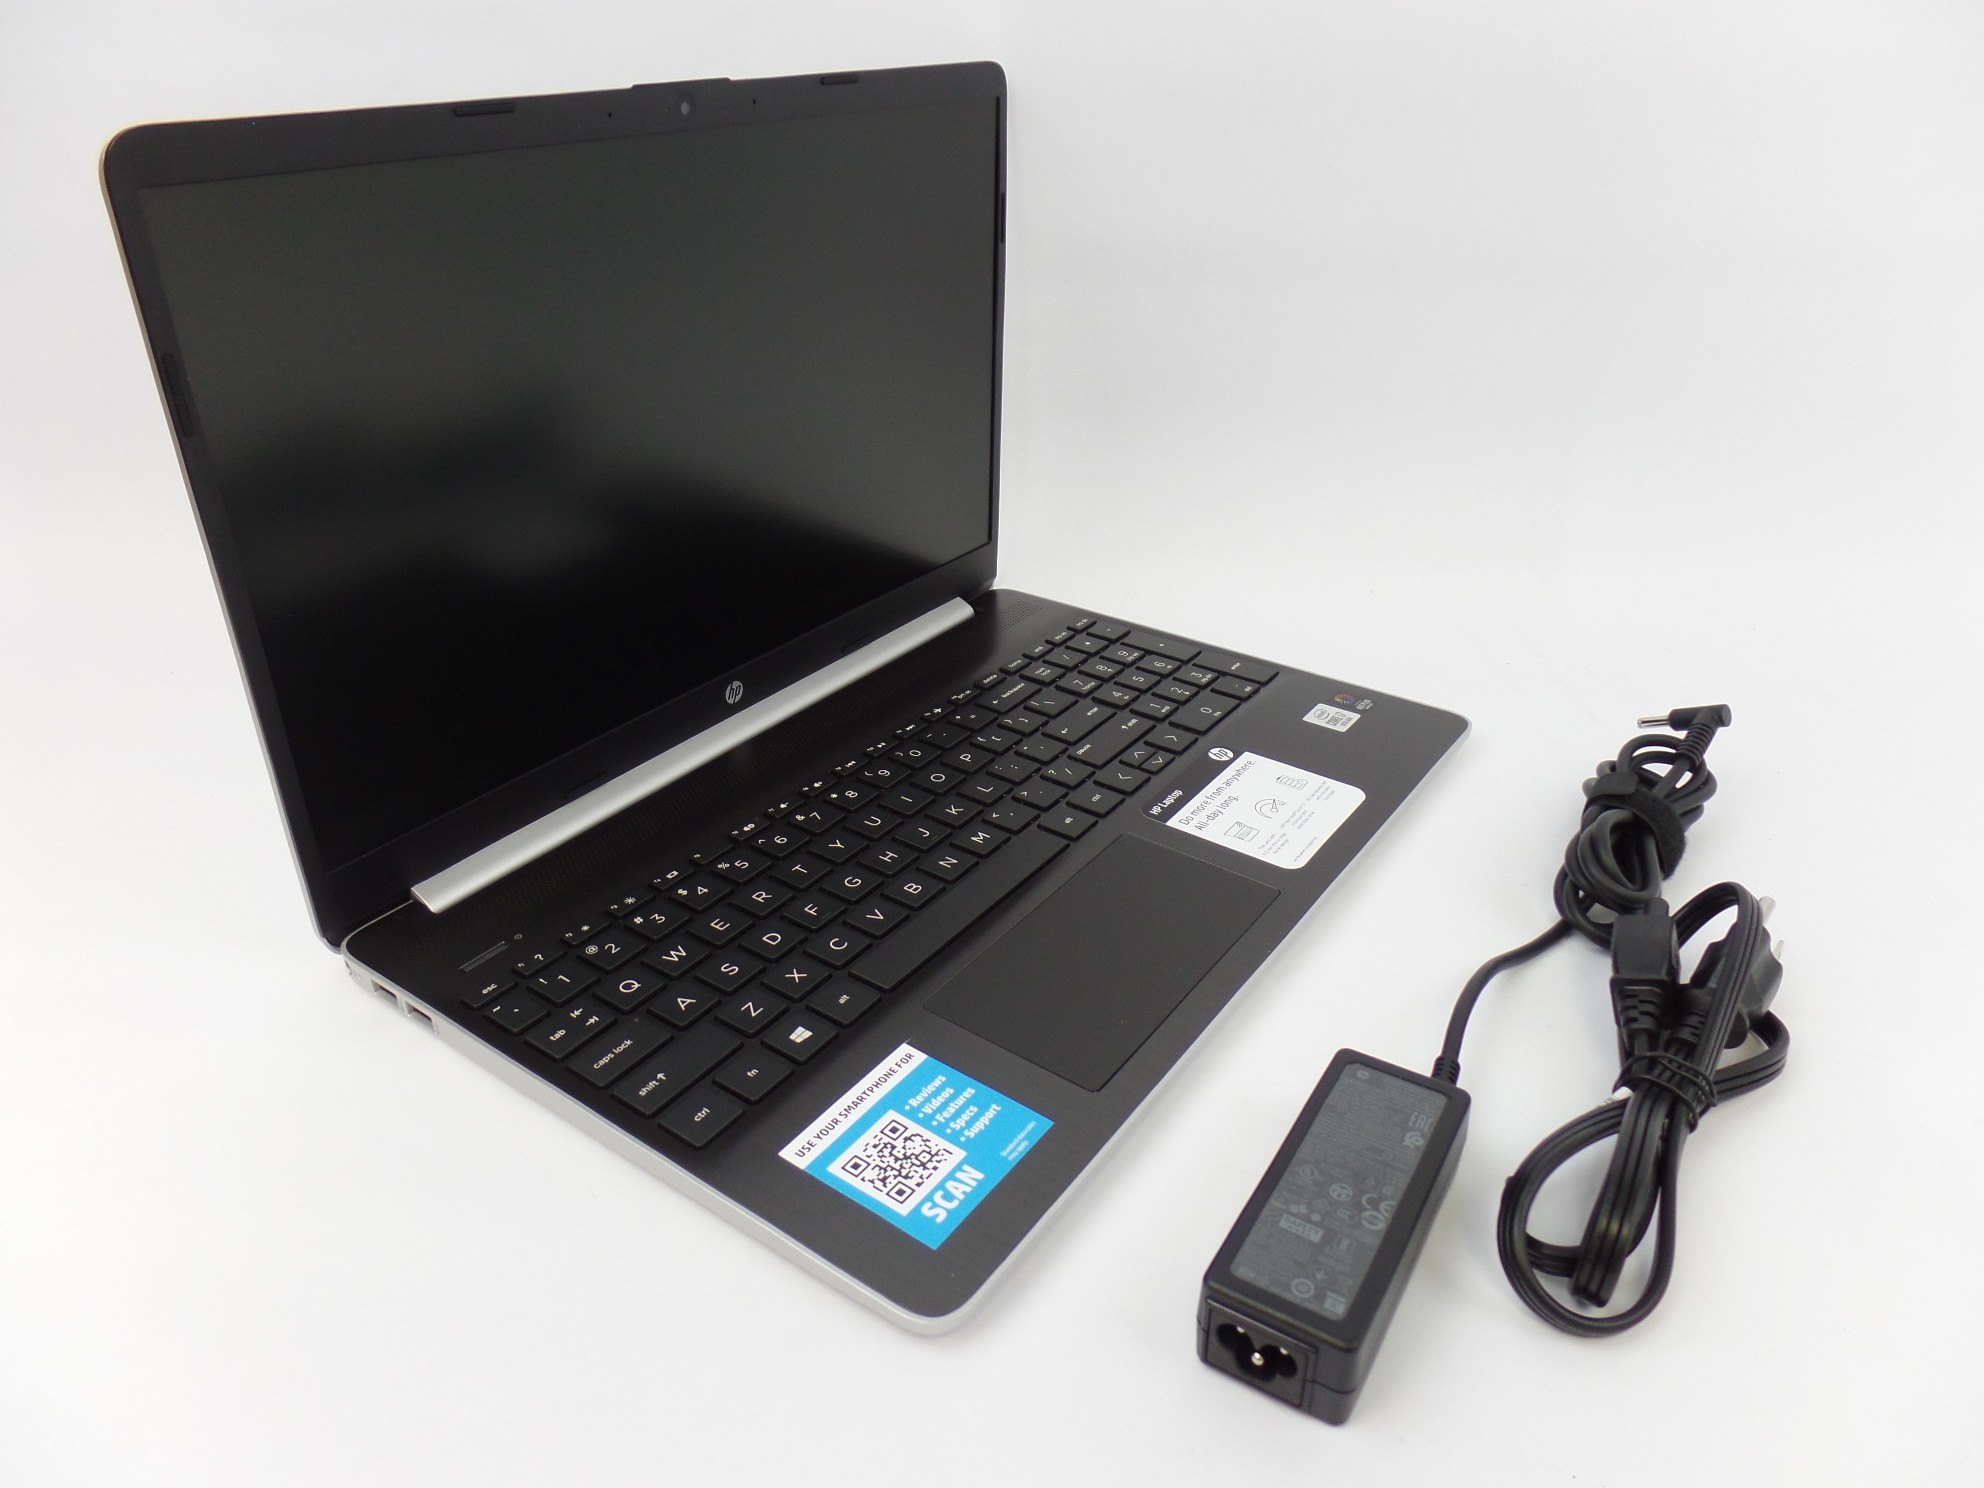 HP 15-dy1078nr 15.6" HD i7-1065G7 1.3GHz 8GB 256GB SSD Iris Plus W10H Laptop SD